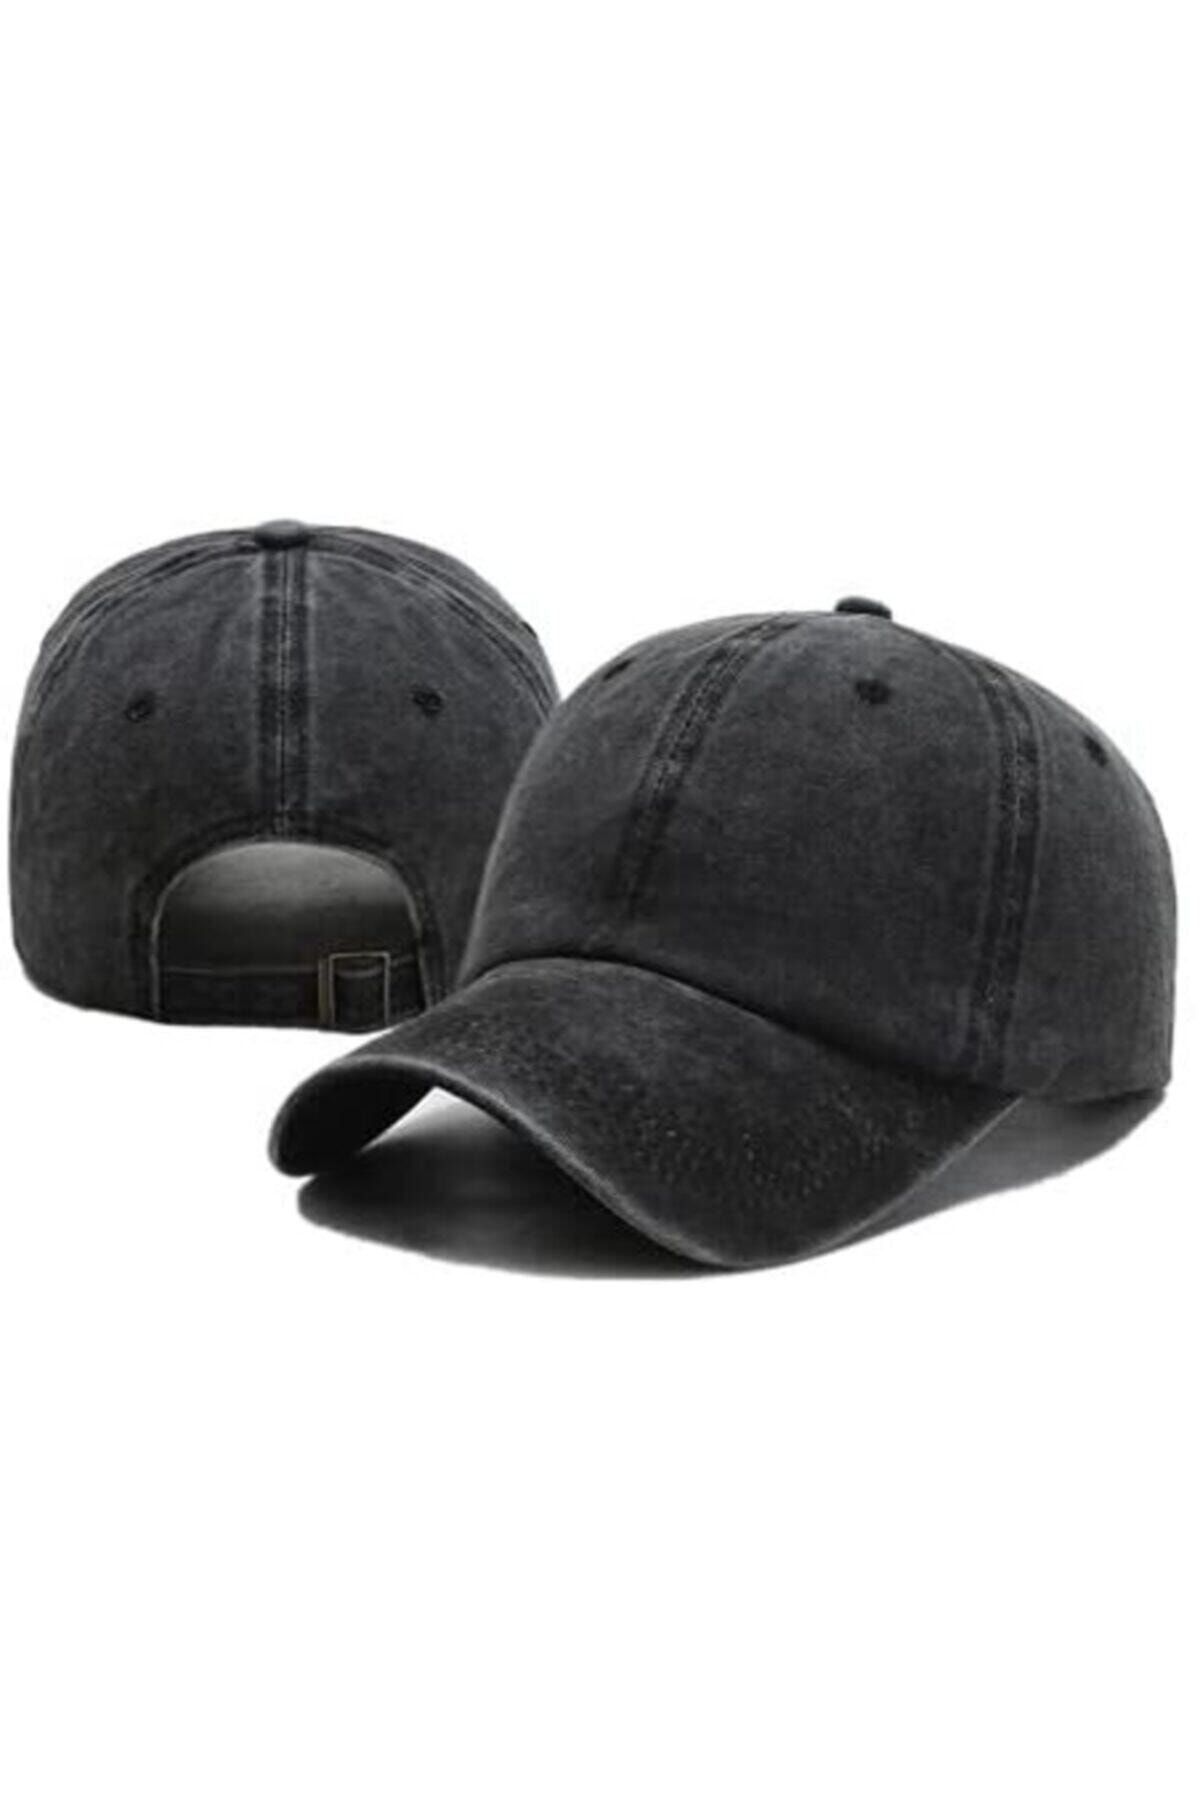 3D Düz Renk Antrasit Cap 2020 Yeni Trend Eskitme Unisex Şapka